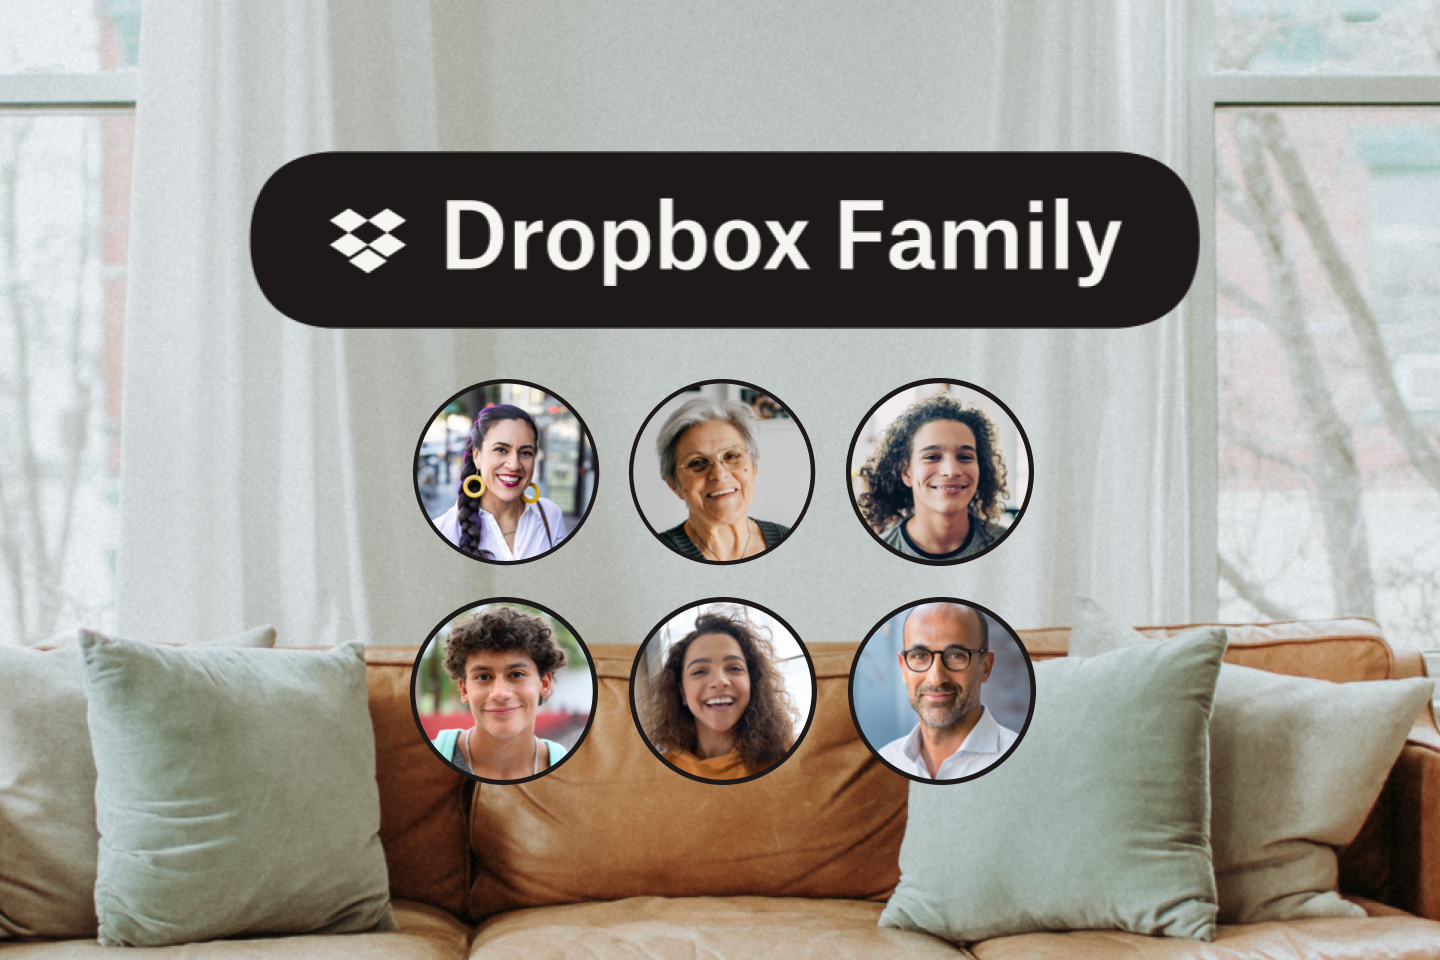 Ledercouch und sechs Symbolbilder einer Familie mit einem Dropbox Family-Logo